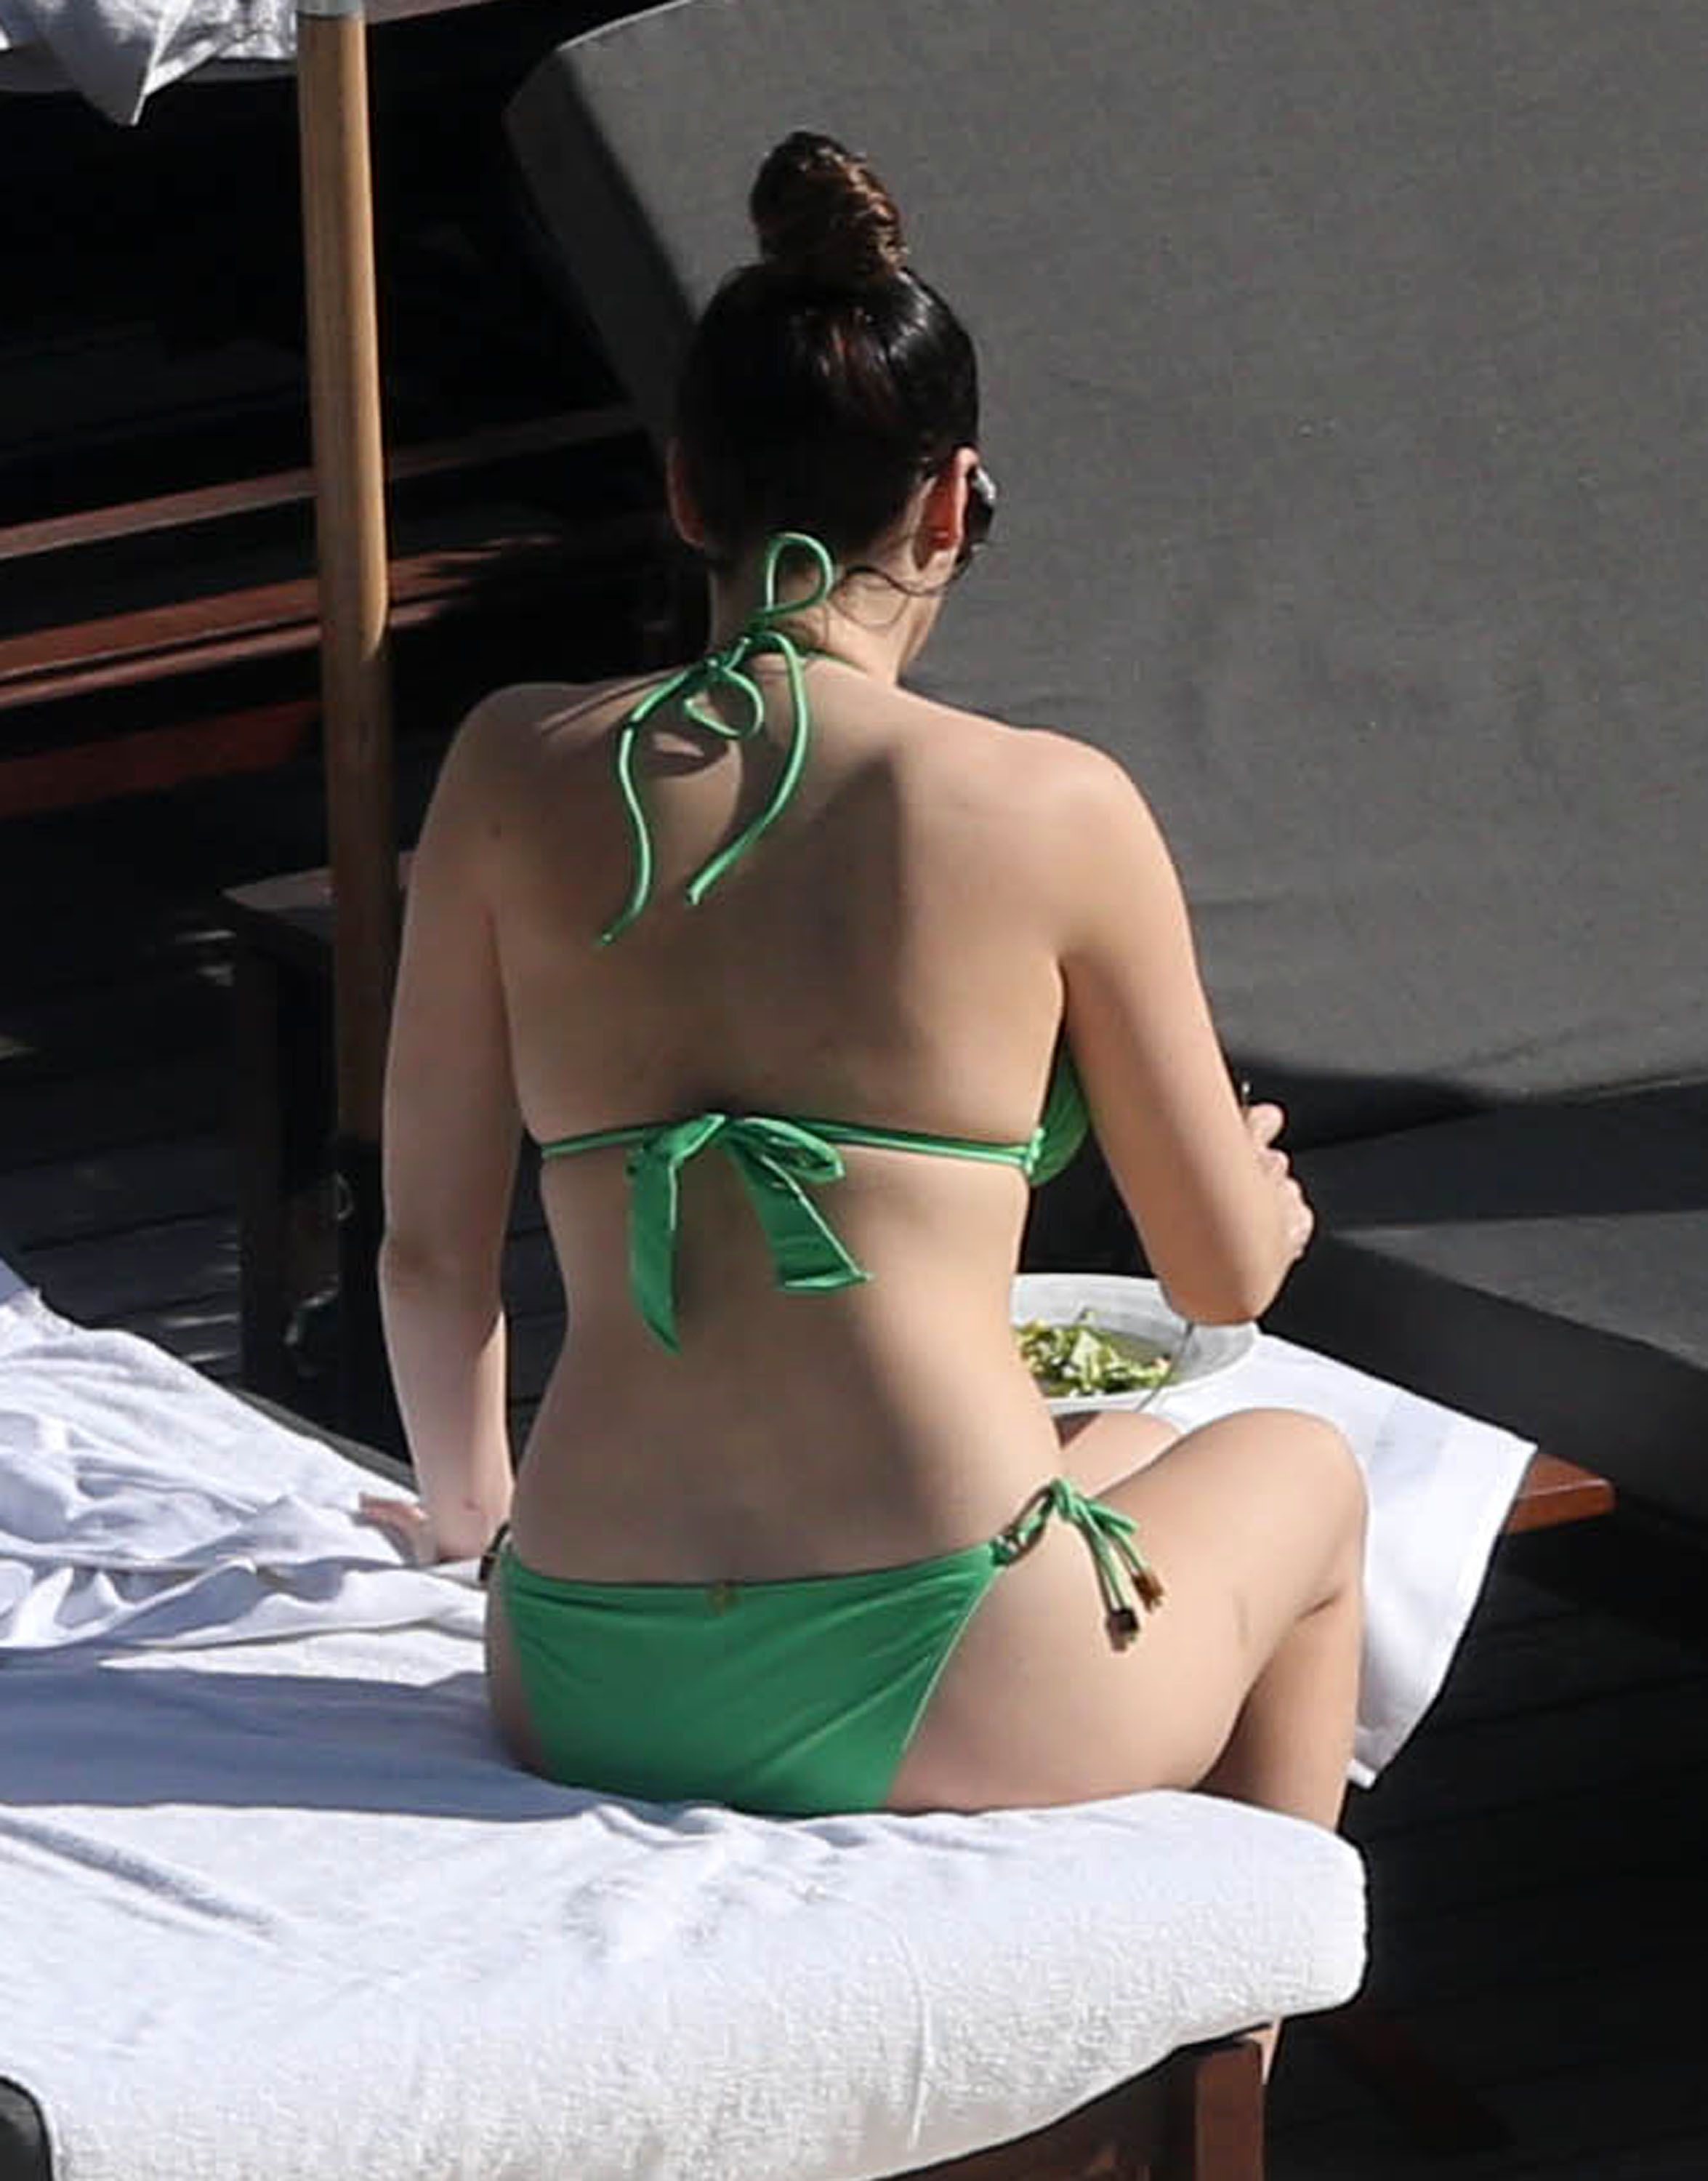 Kelly green and bikini